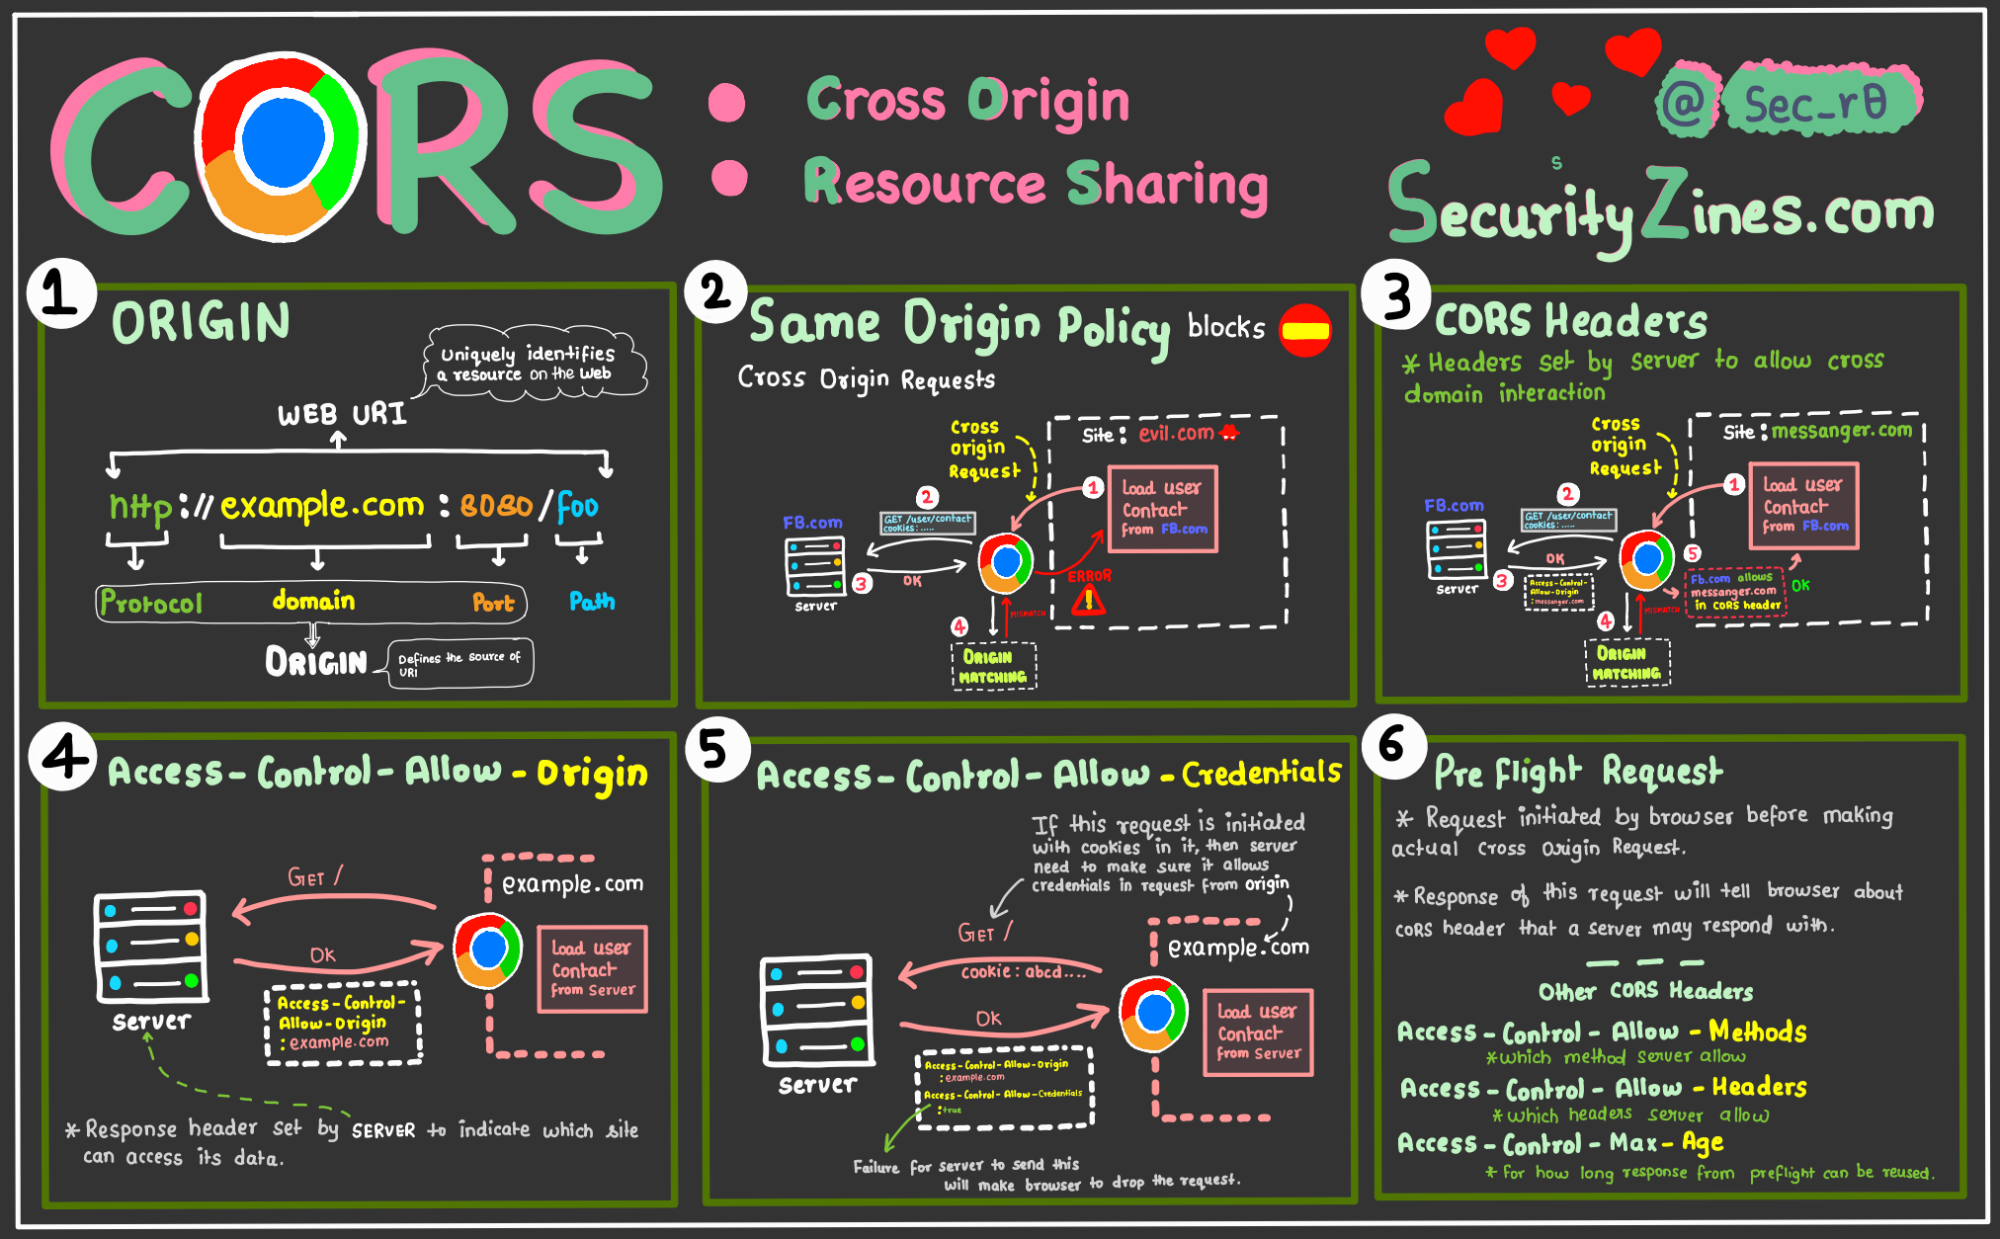 securityzines-cross-origin-resource-sharing